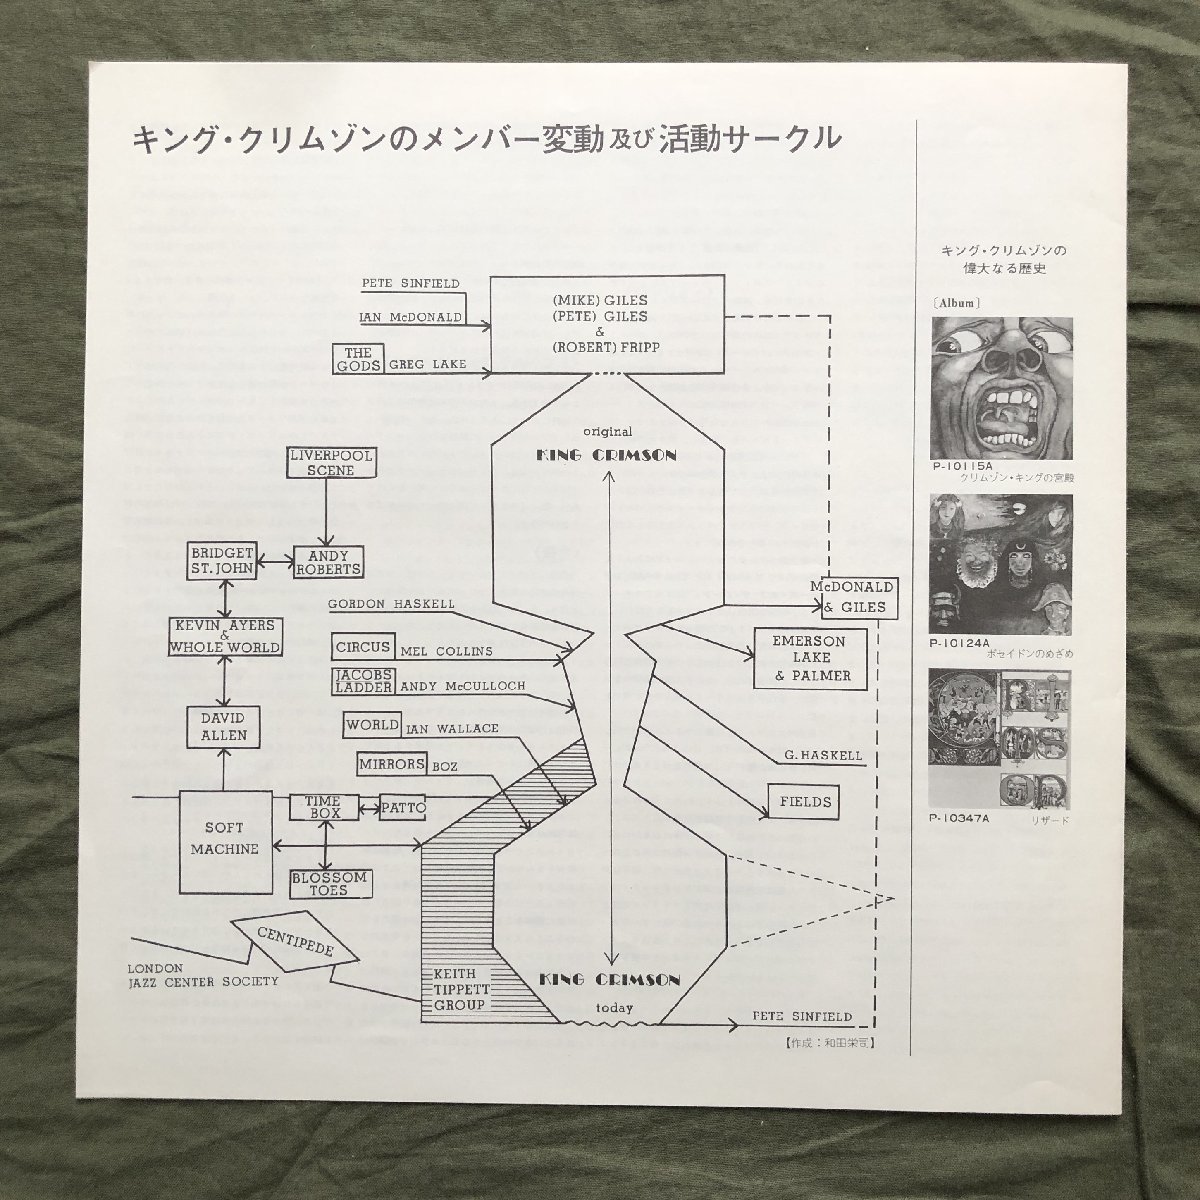  царапина нет прекрасный запись хорошо jacket 1977 год записано в Японии King * Crimson King Crimson LP запись Islay nzIslands Progres Robert Fripp